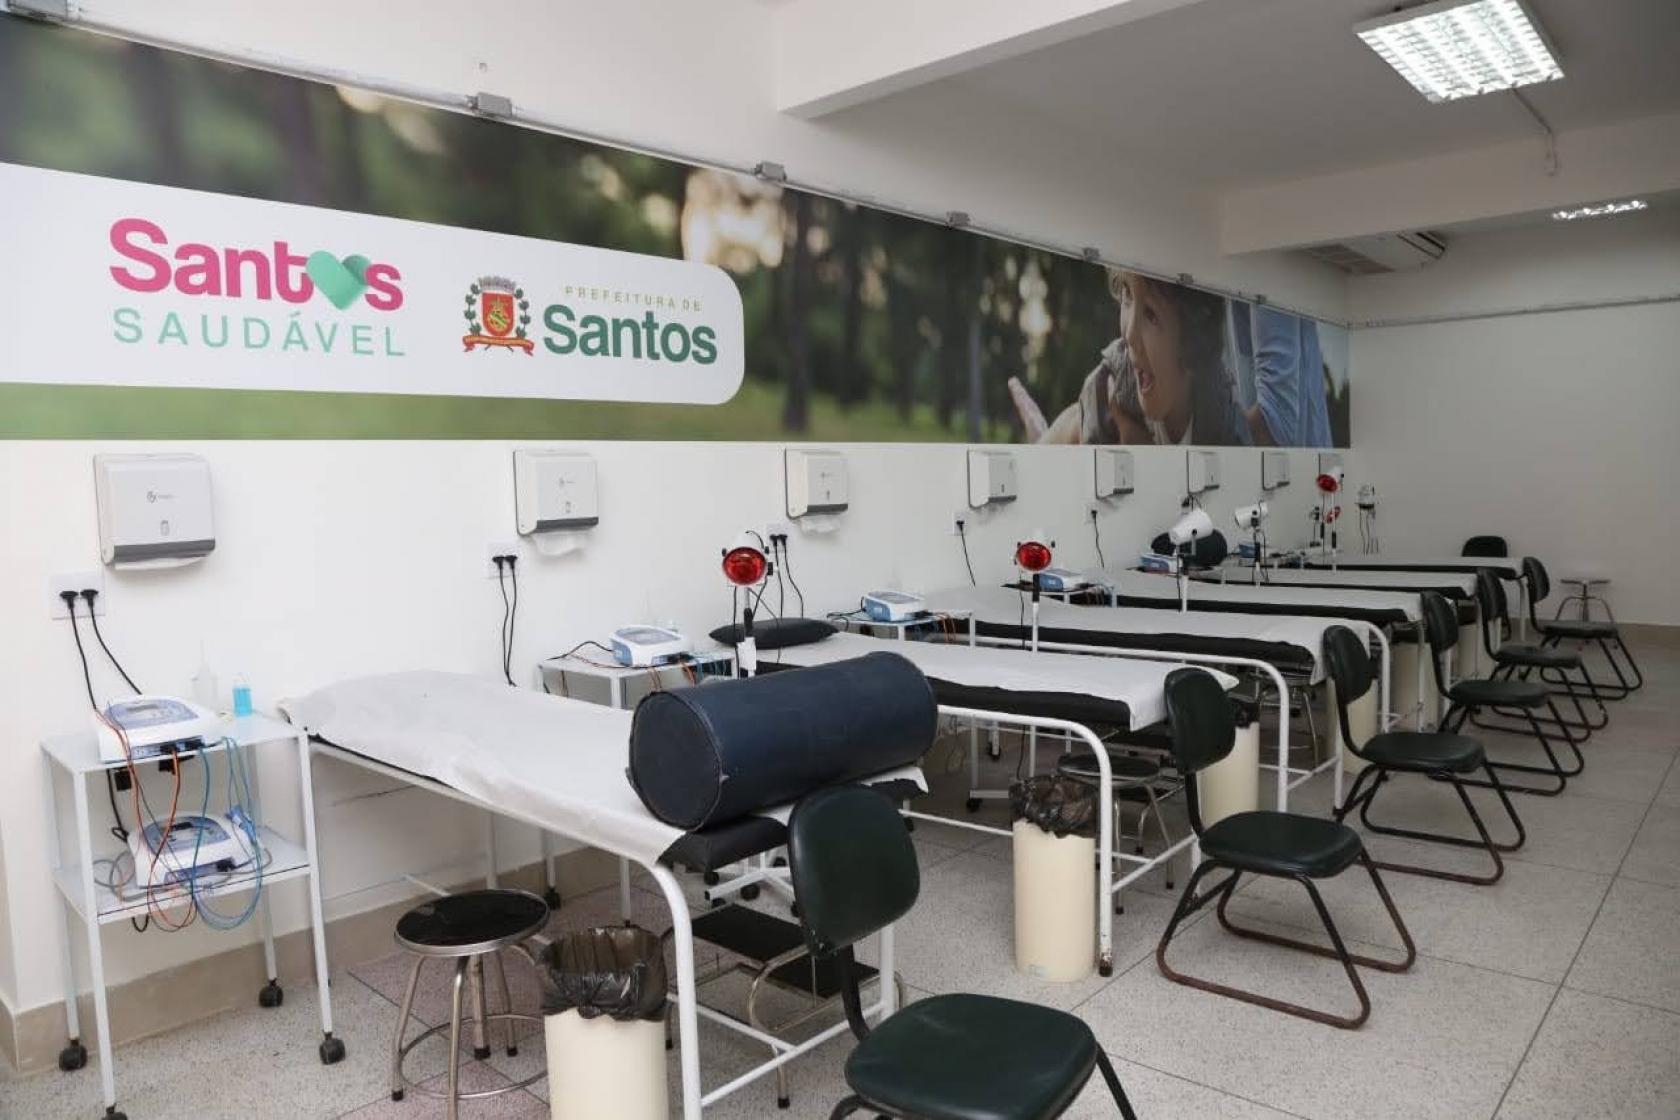 Sala com diversas macas de fisioterapia enfileiradas. Ao fundo há um painel onde se lê Santos Saudável. #Paratodosverem